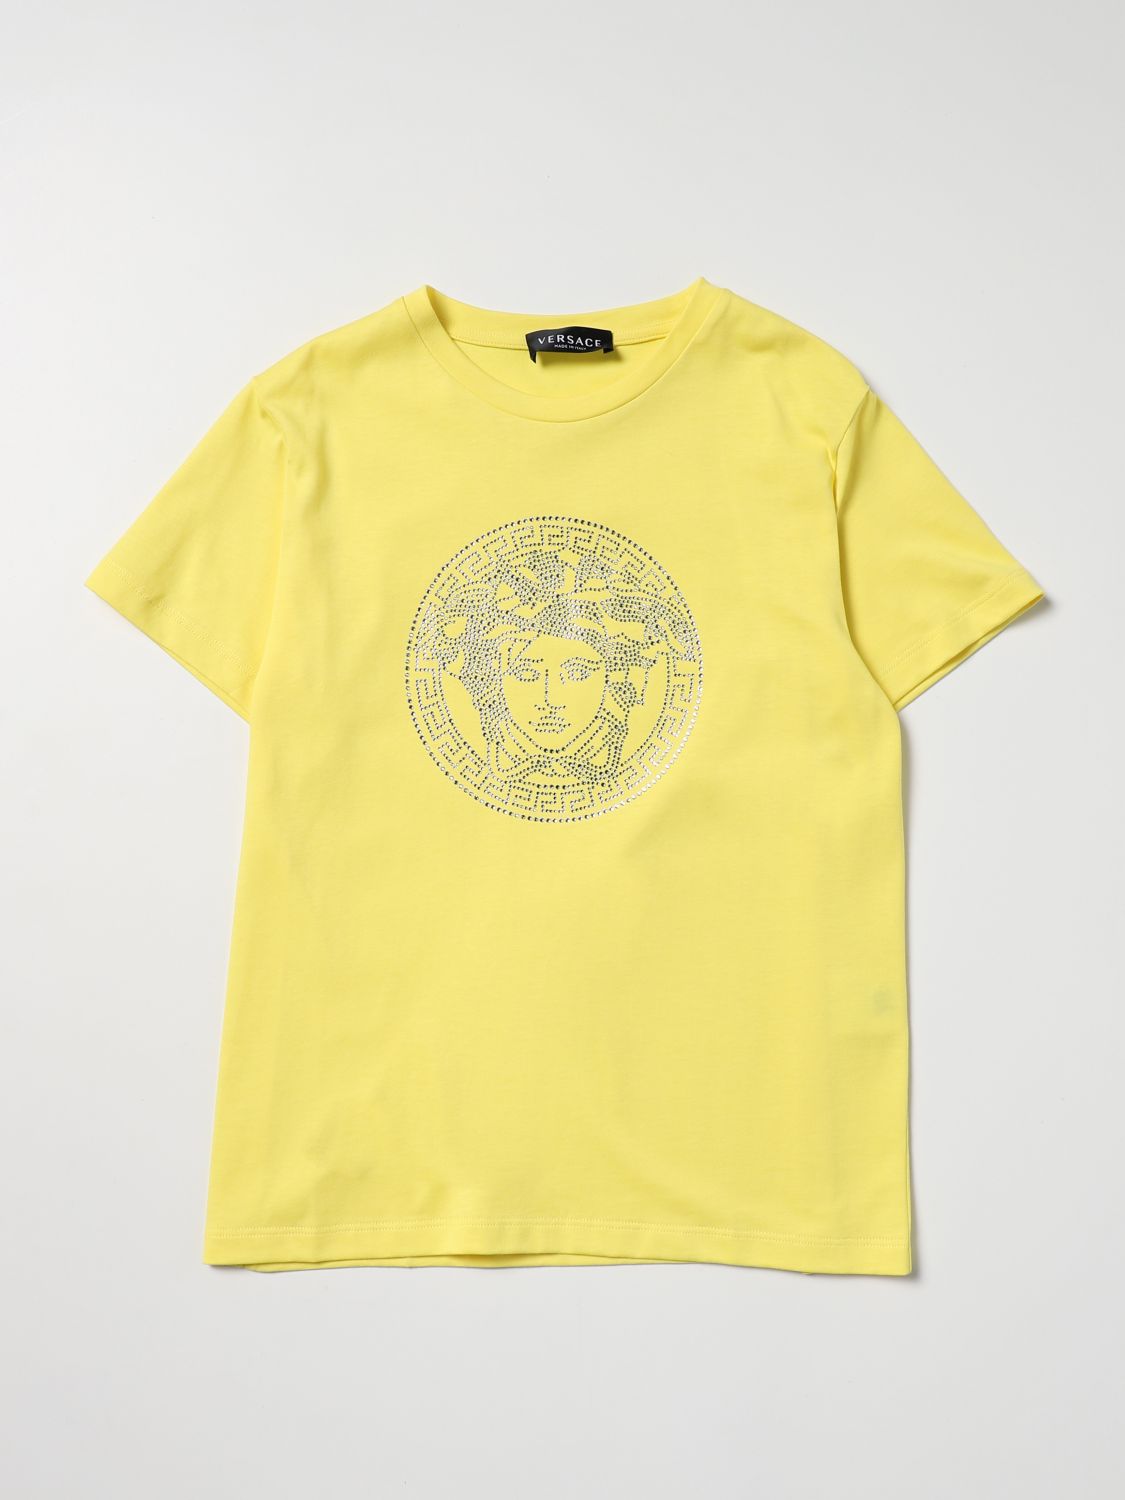 T-Shirt Young Versace: Young Versace Mädchen T-Shirt gelb 1